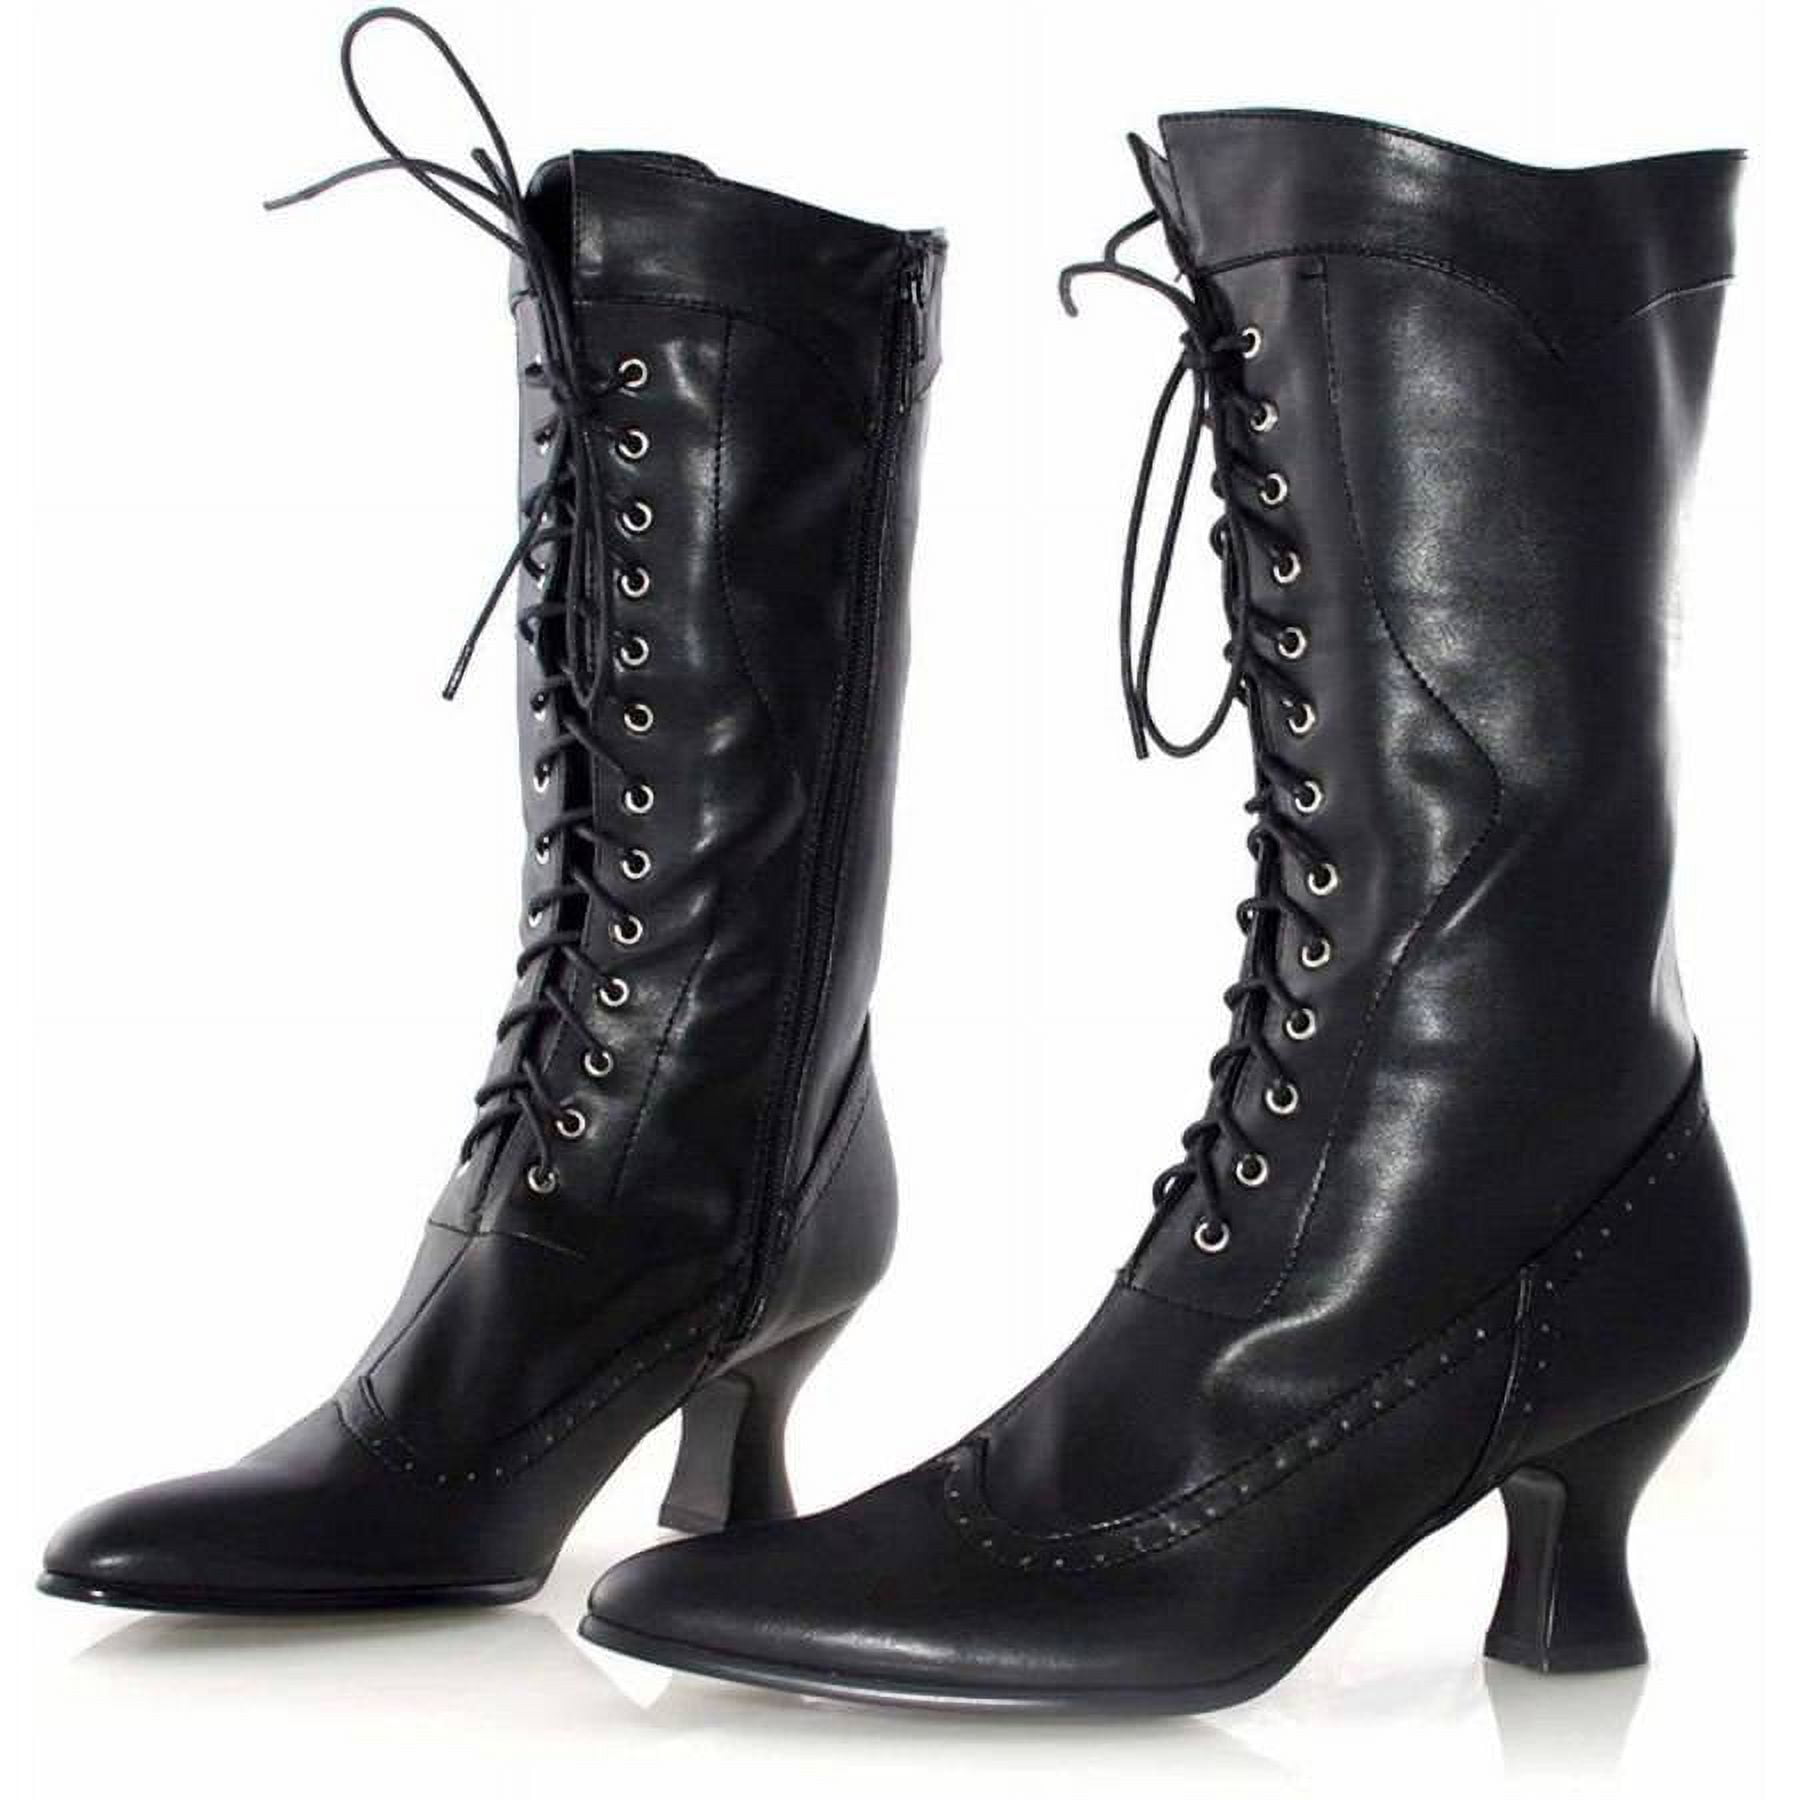 Amelia (Black) Adult Boots - 6